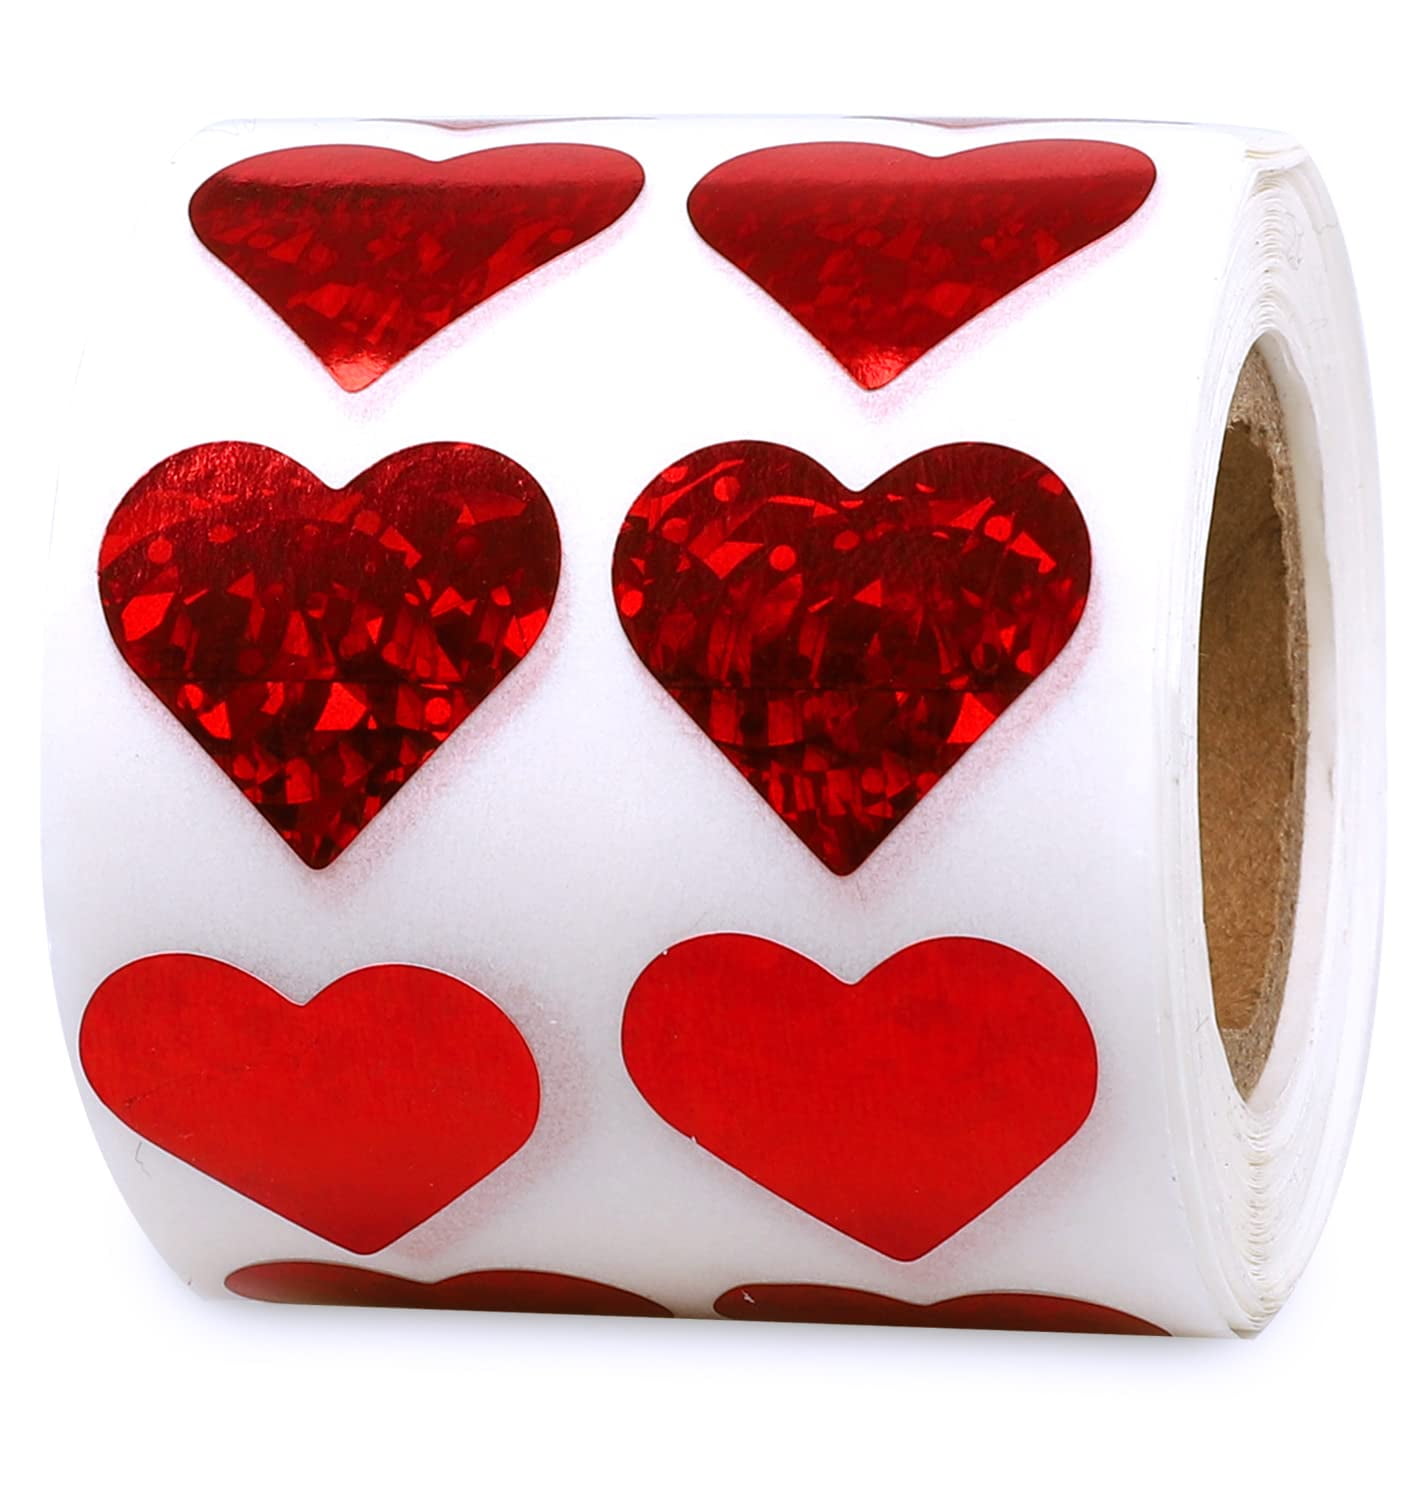 Foam Glitter Heart Stickers by Creatology™